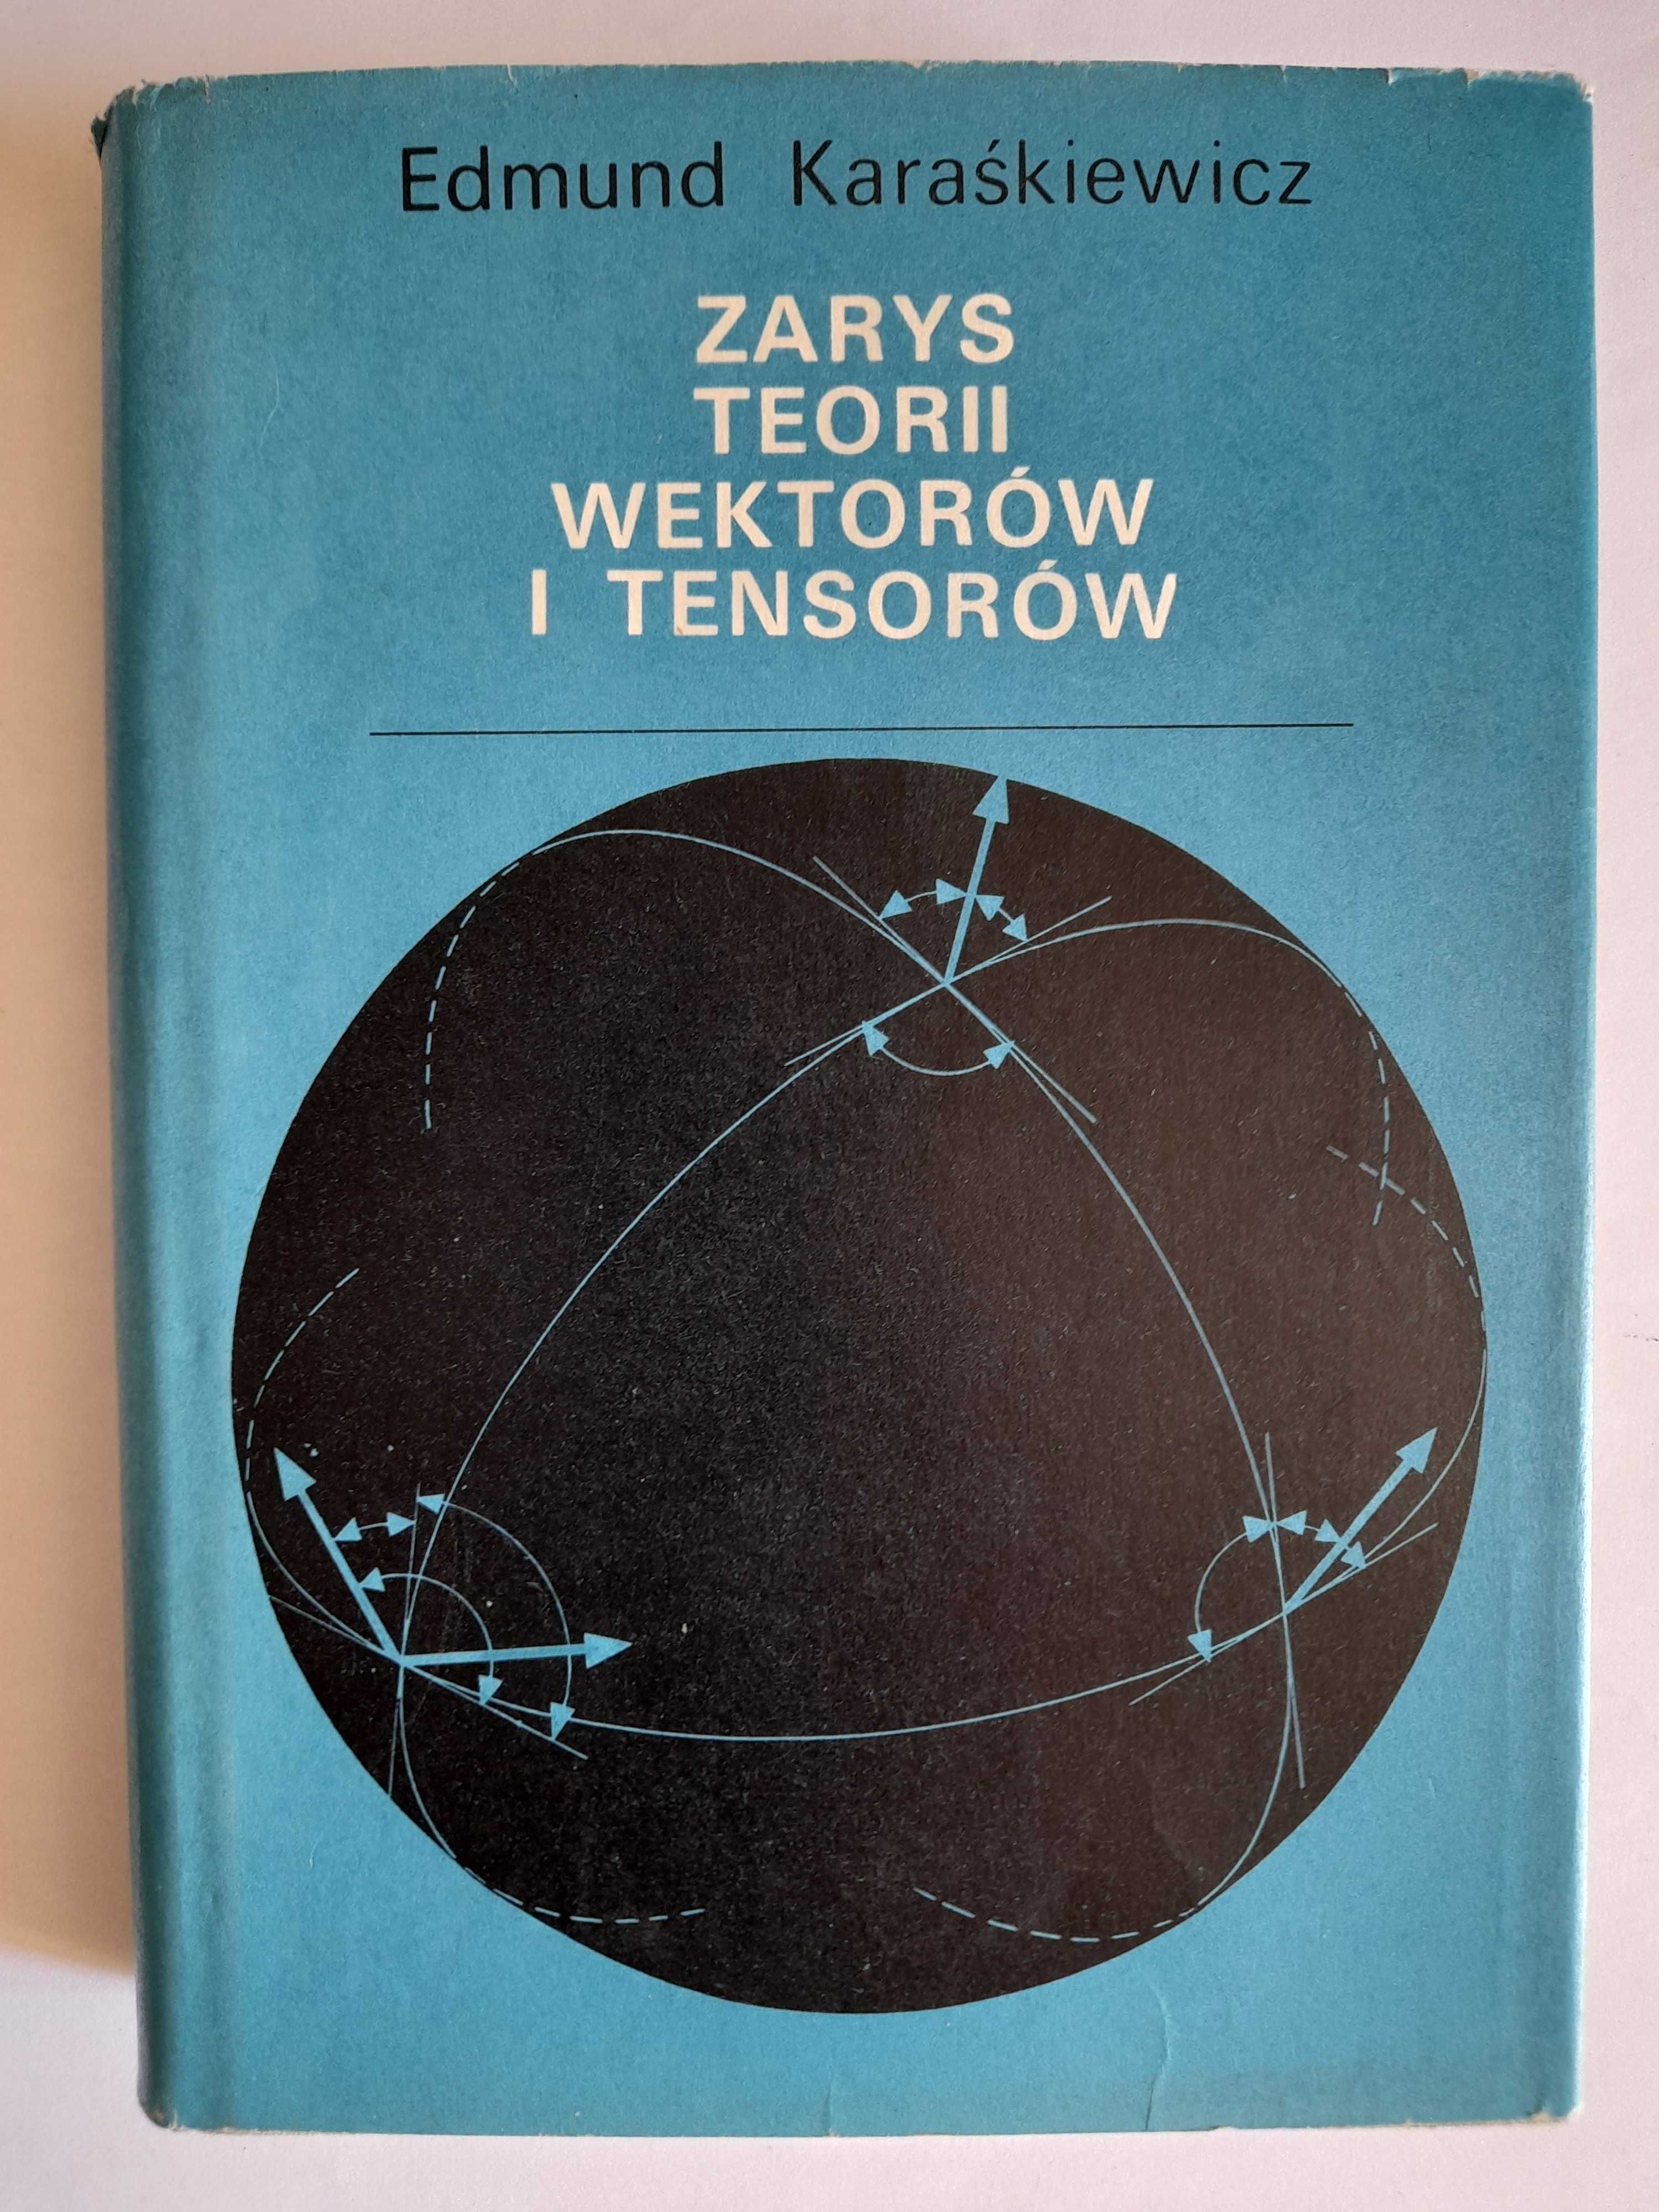 Zarys teorii wektorów i tensorów - Edmund Karaśkiewicz